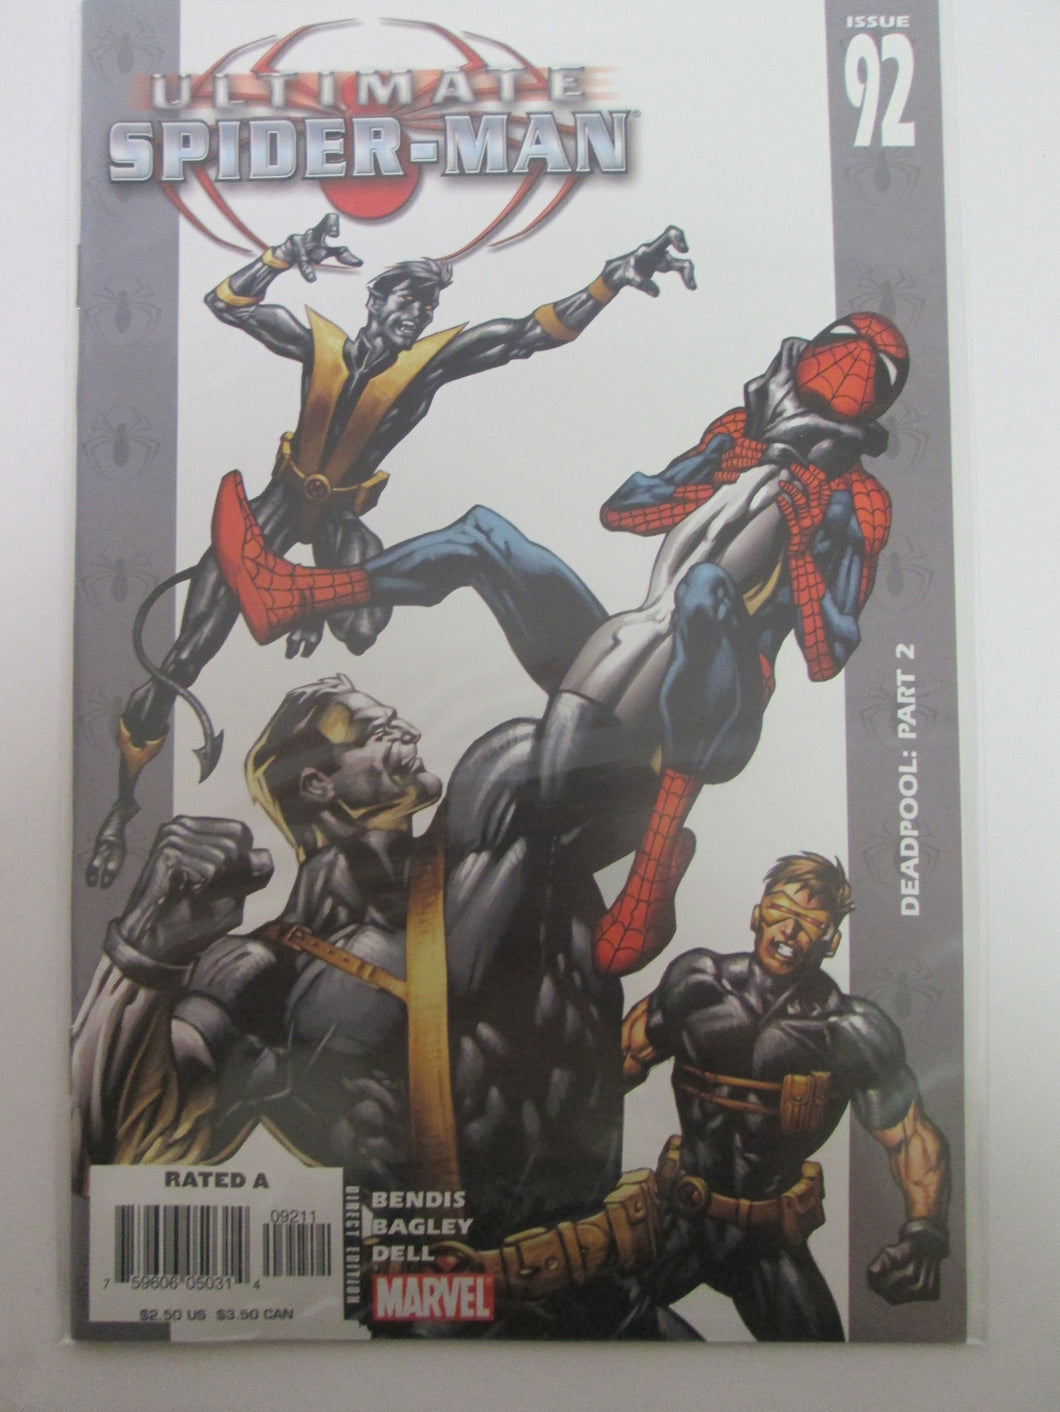 Ultimate Spider-Man # 92 (Marvel)